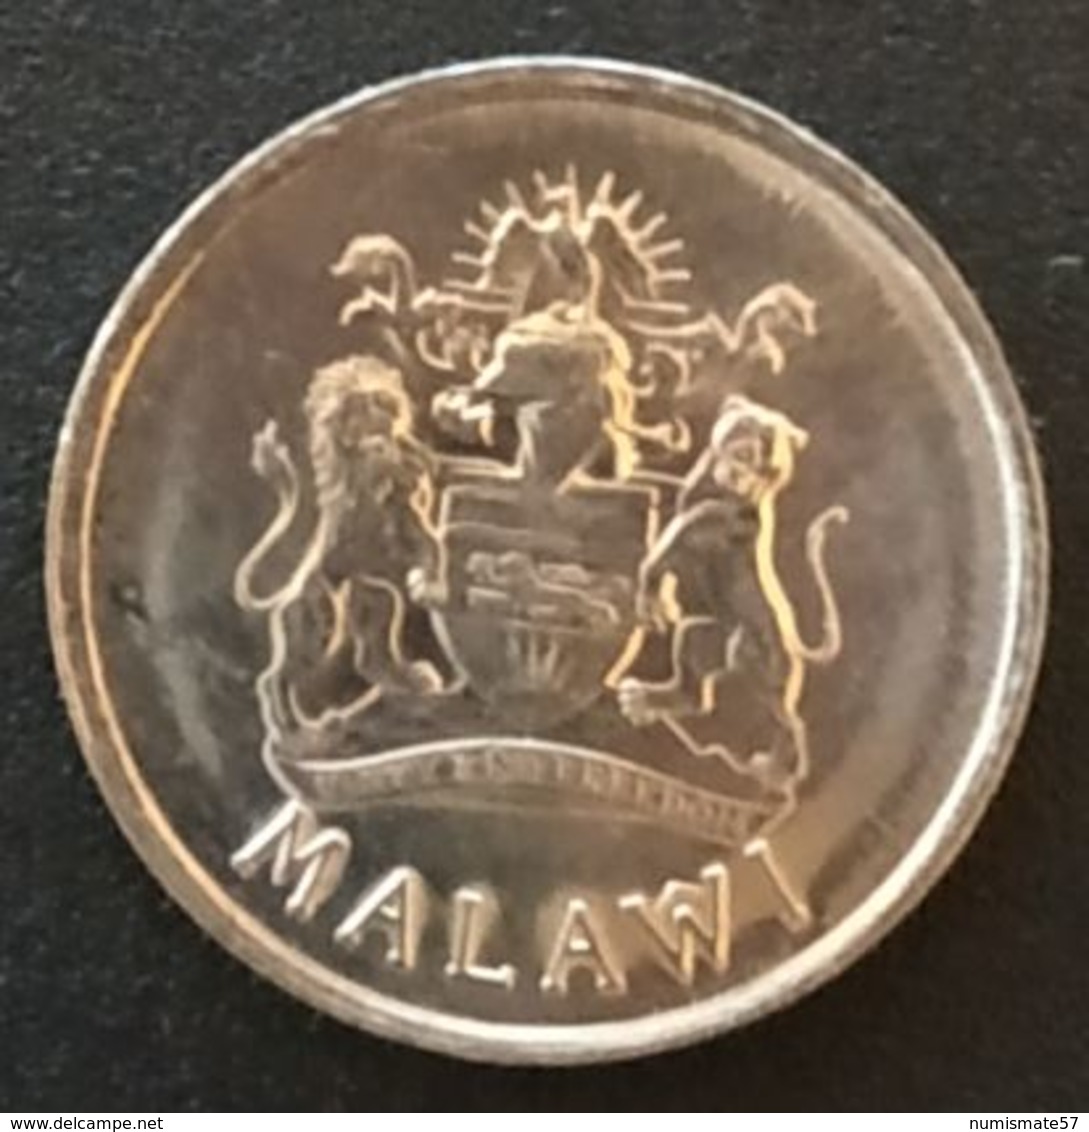 MALAWI - 5 TAMBALA 1995 - KM 32 - Malawi